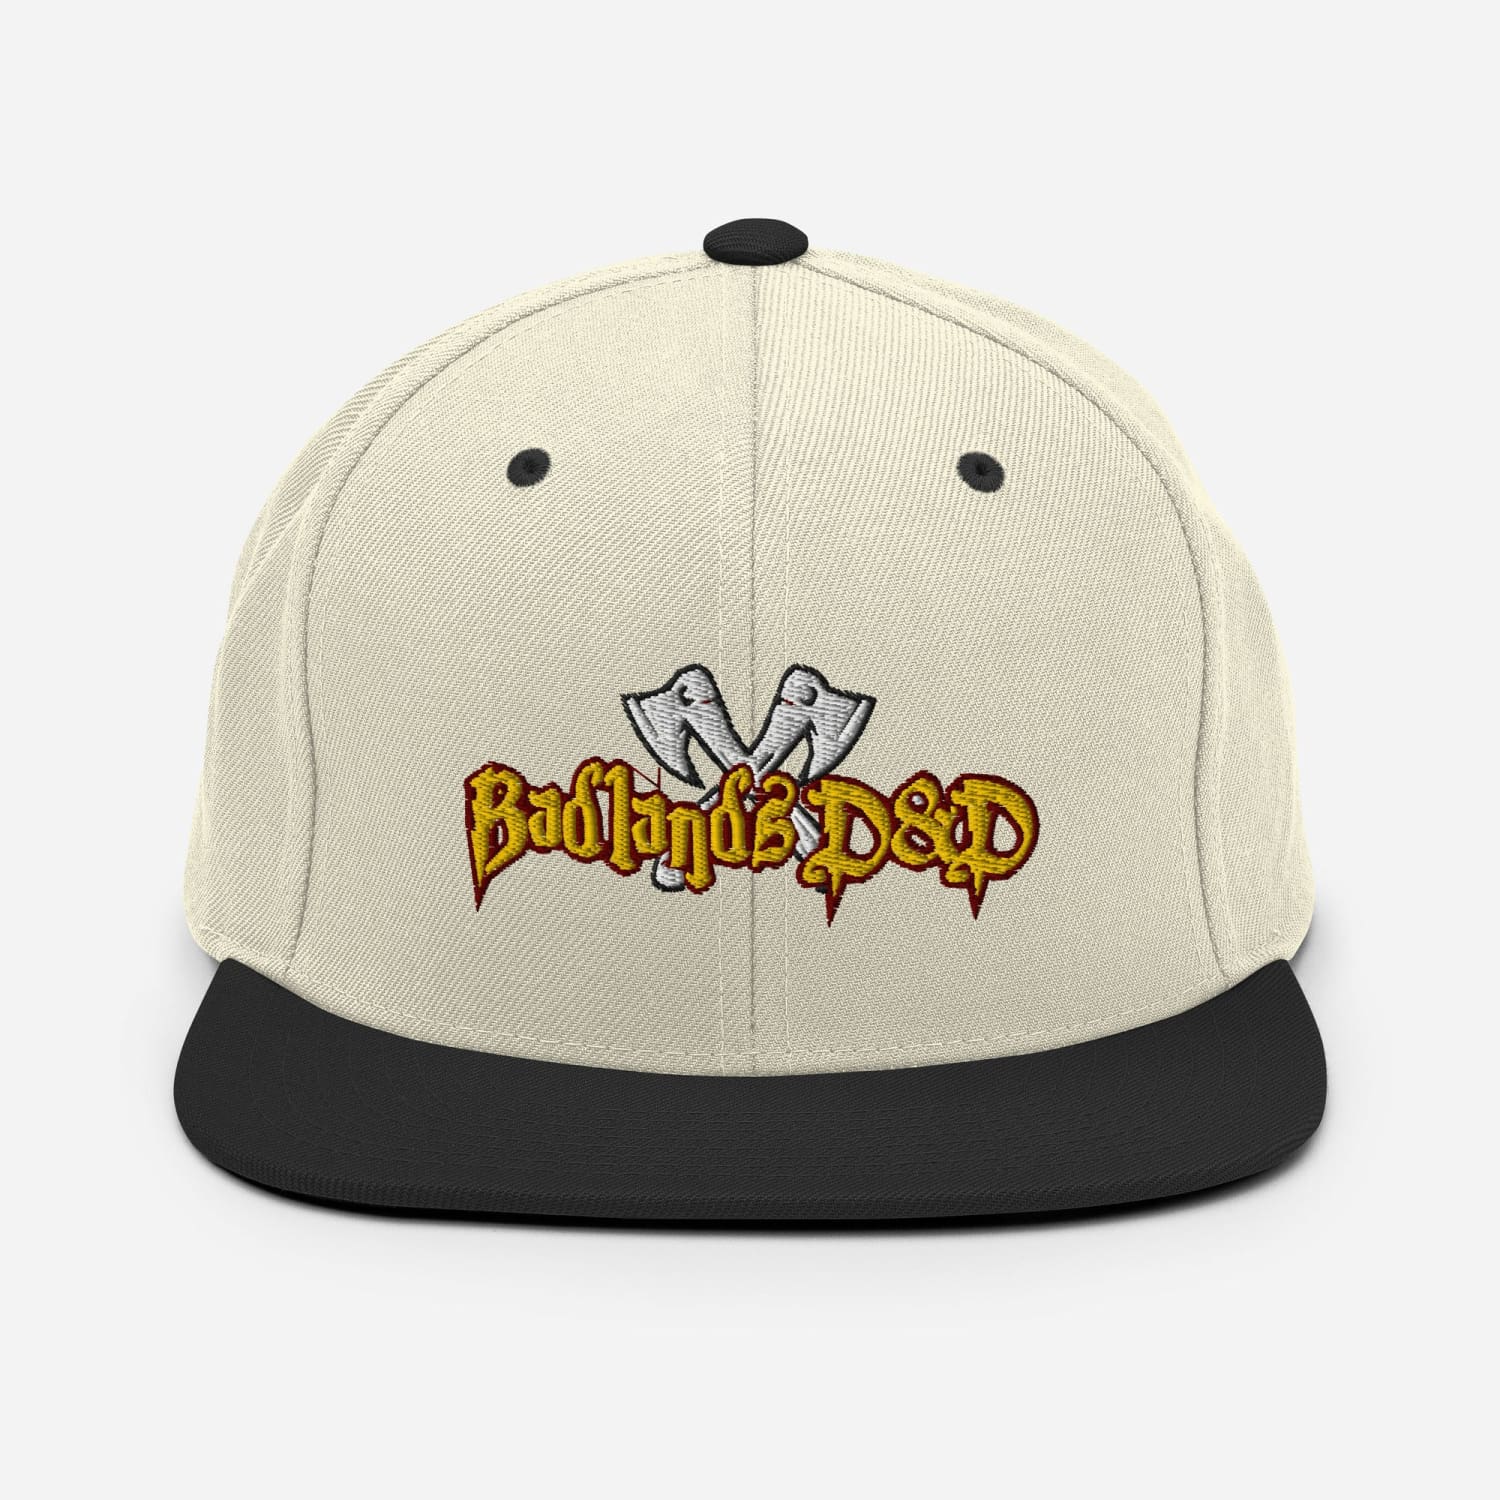 Badlands D&D Logo Classic Snapback Cap - Natural/ Black